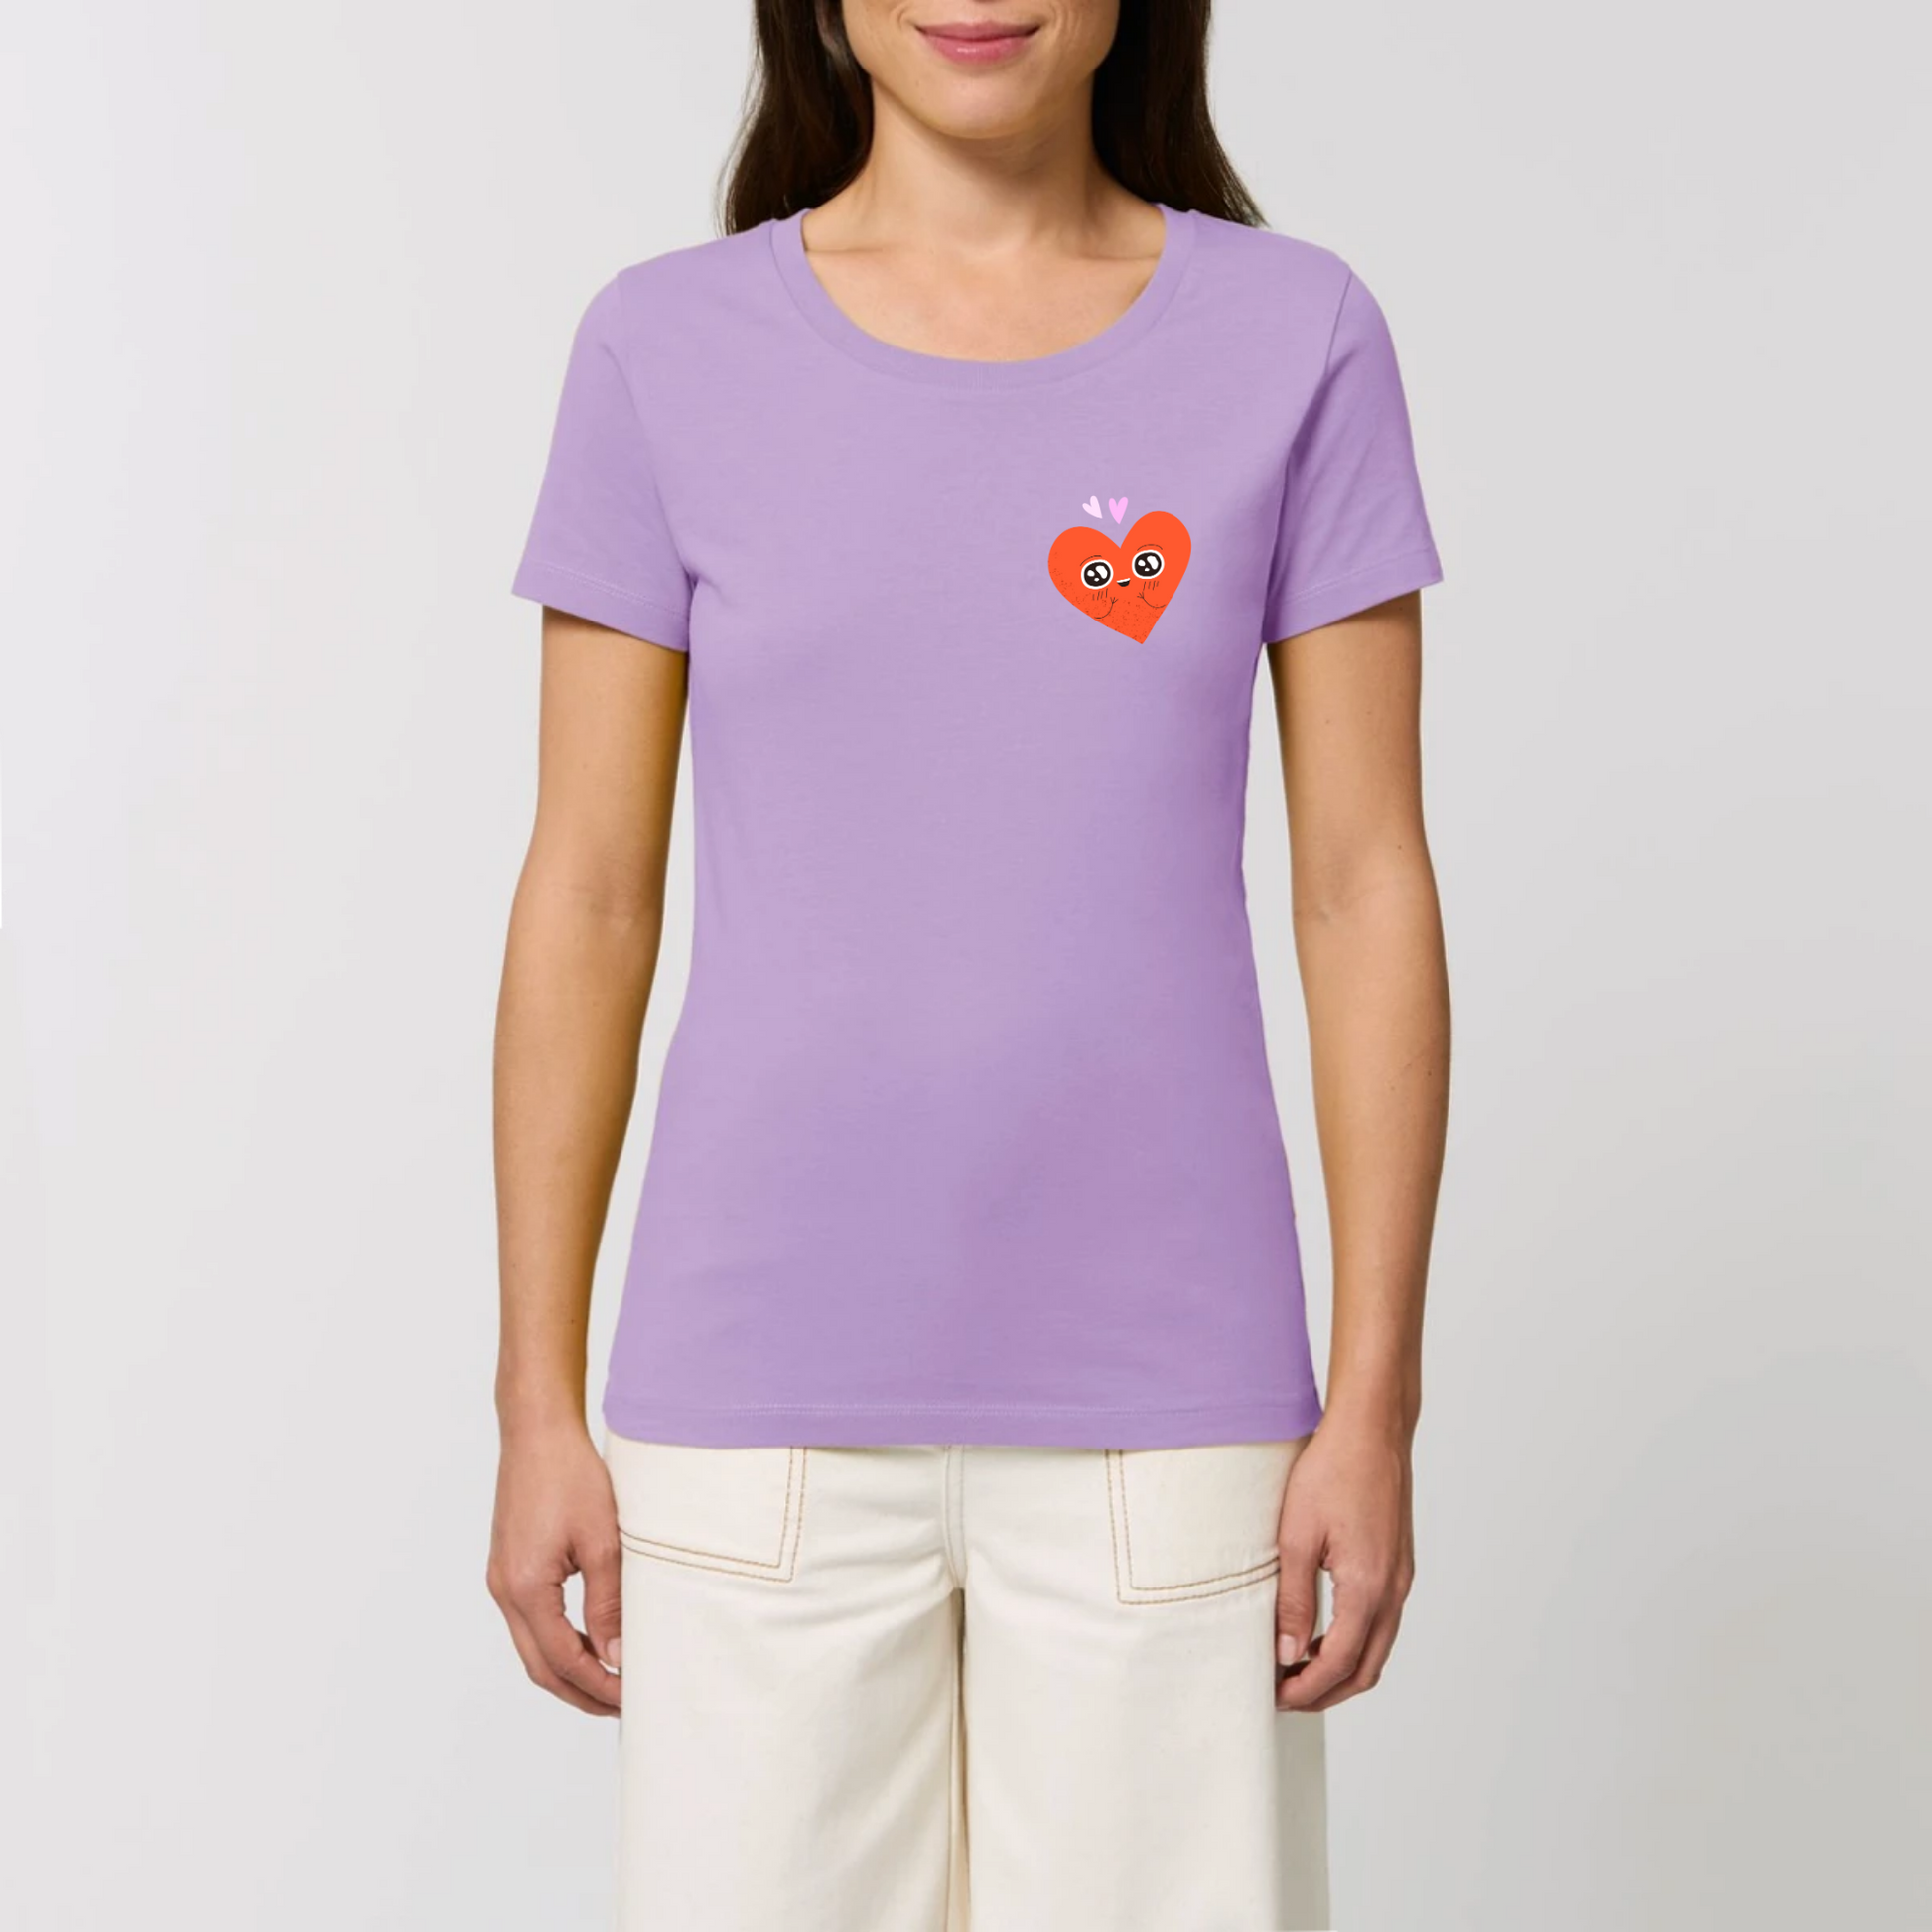 t-shirt femme Amoureux T-French coton bio, tee shirt femme, manches courtes , cœur, saint valentin, Lavande